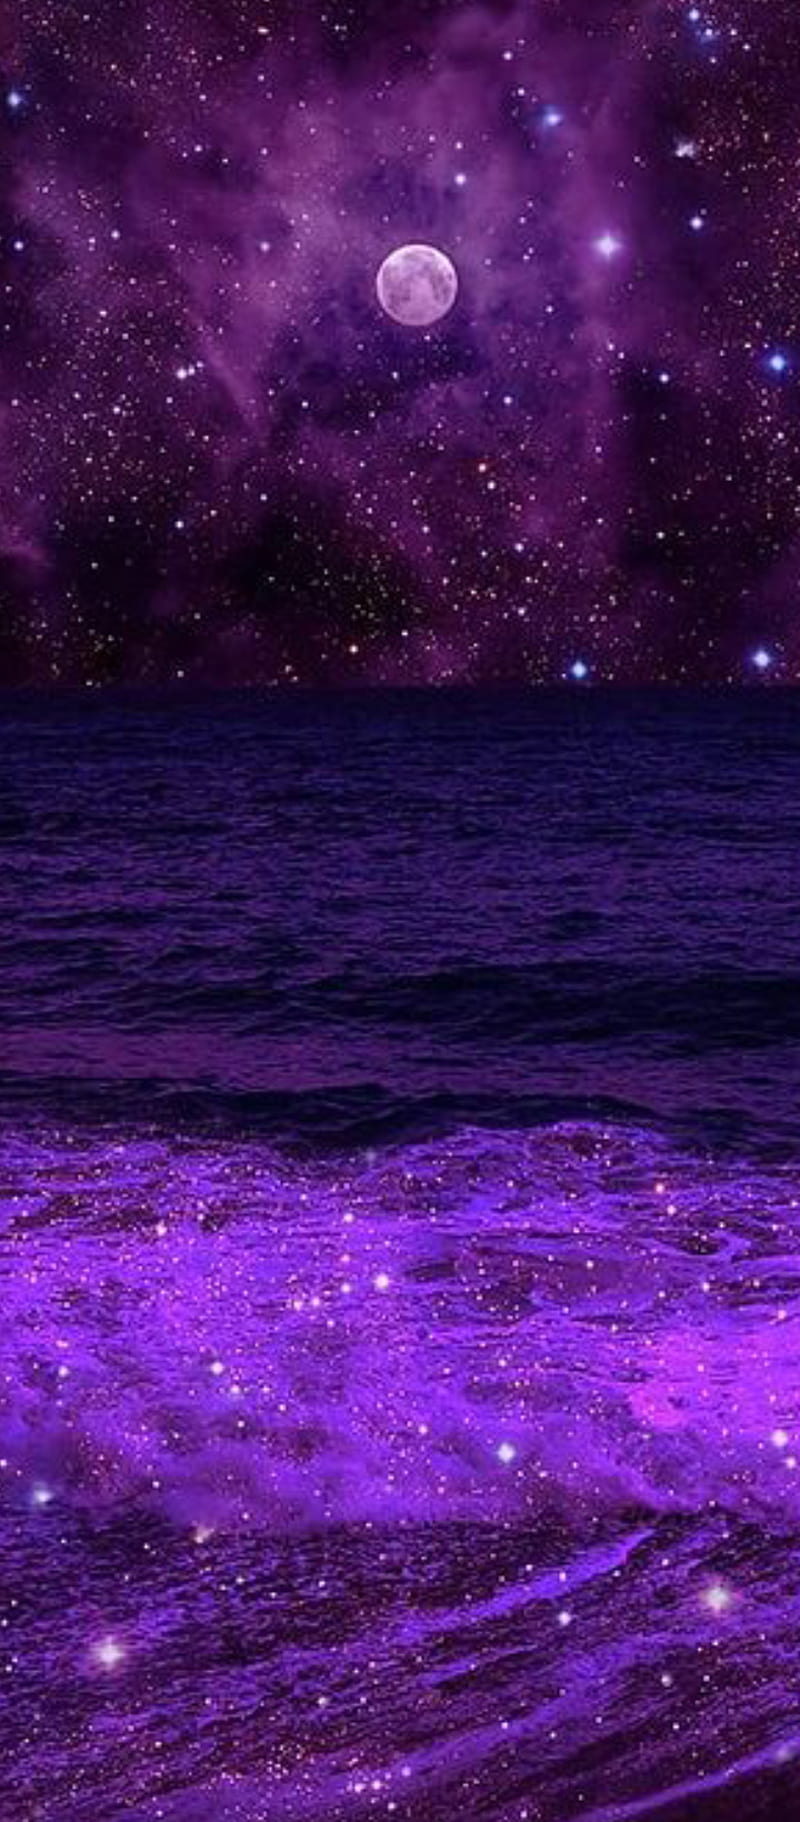 1920x1080px, 1080P free download | Purple, galaxy, nebula, nebulae ...